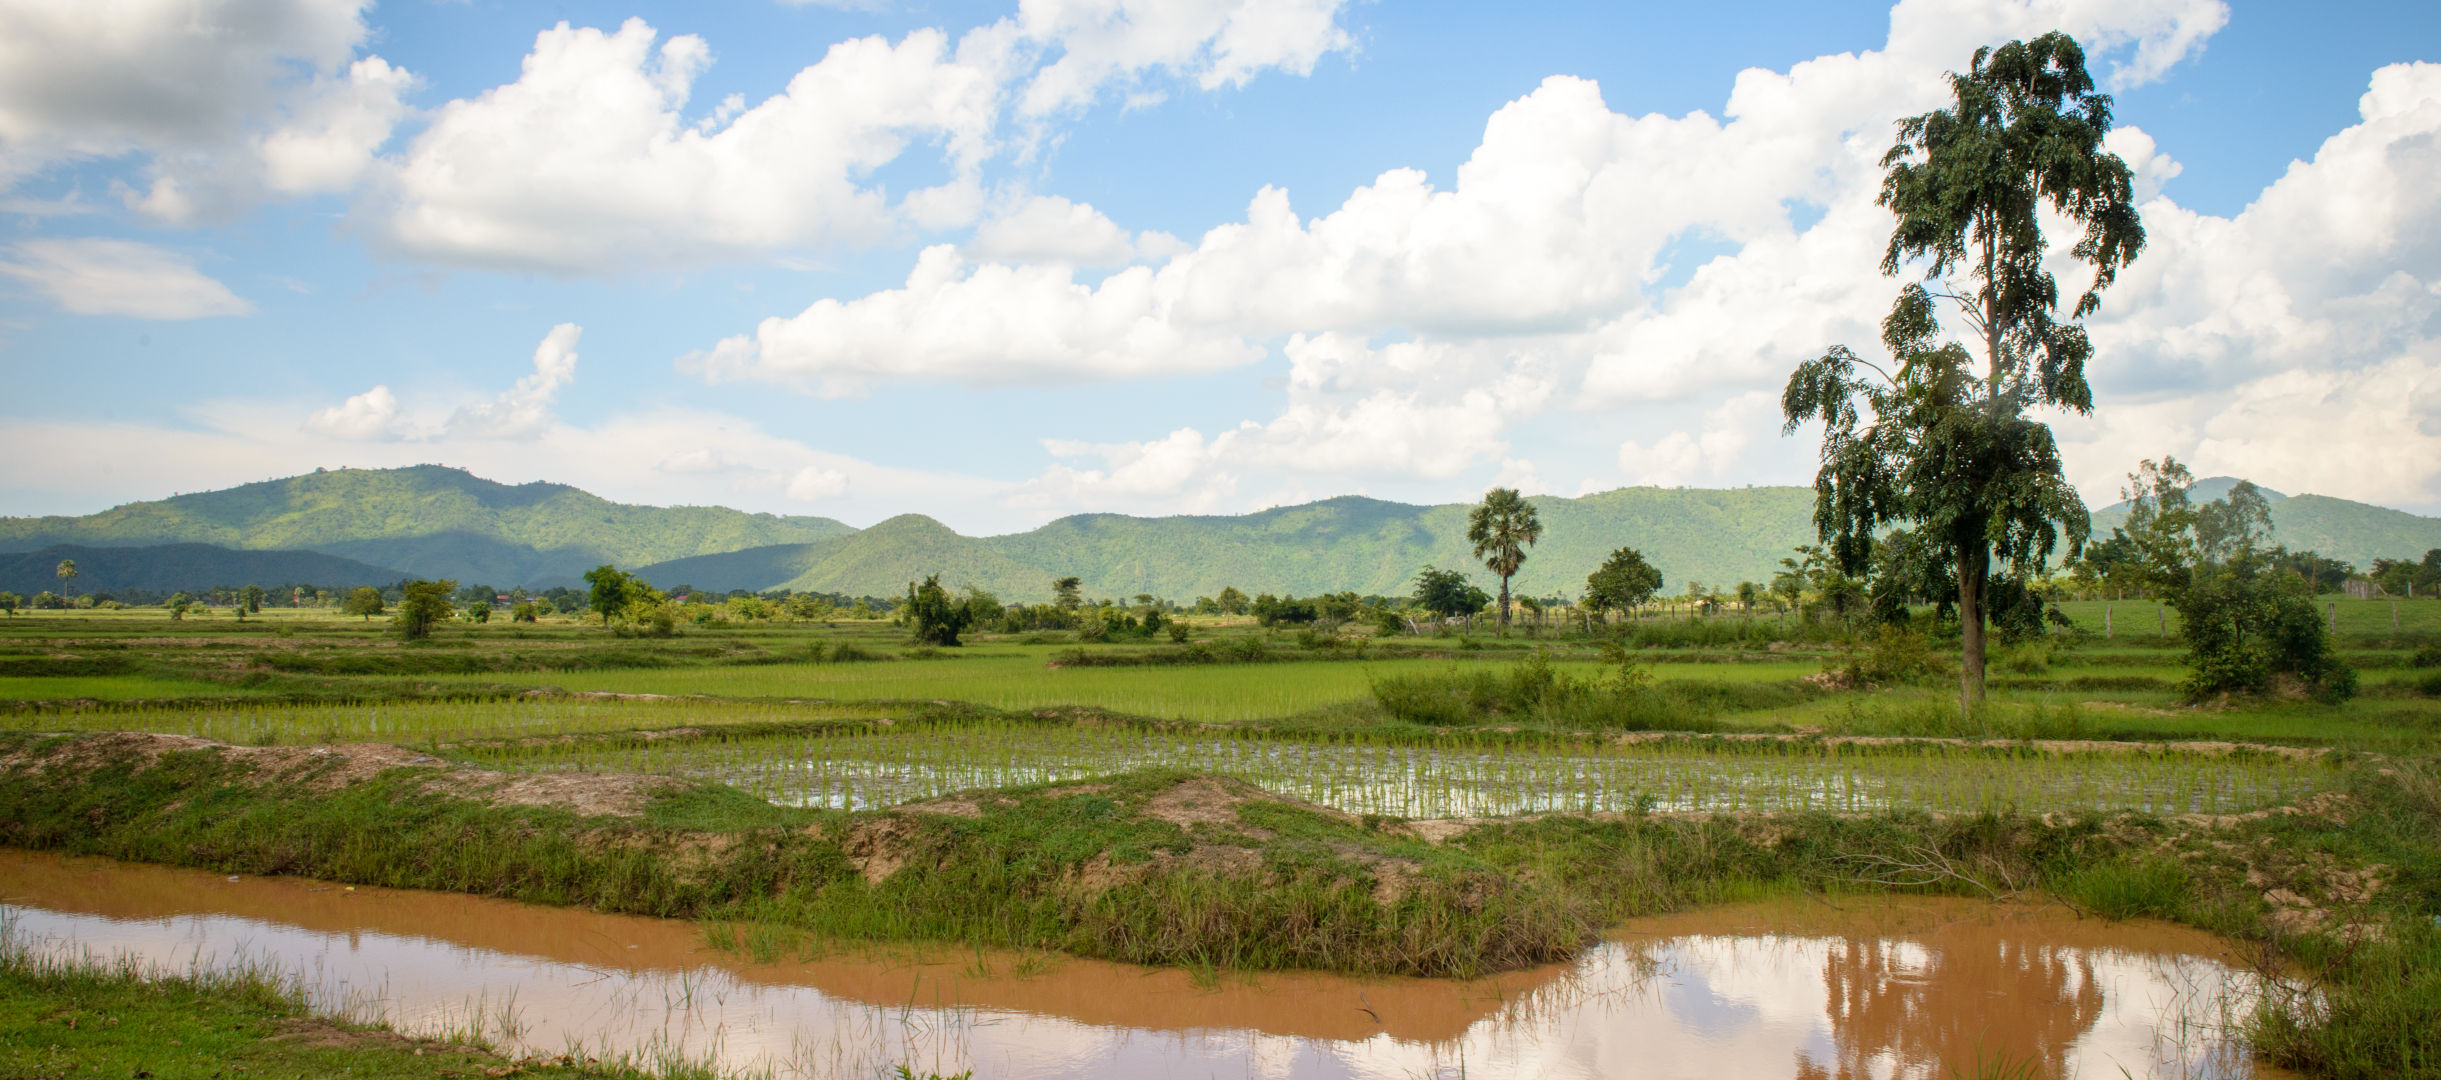 Landschaft in Kambodscha